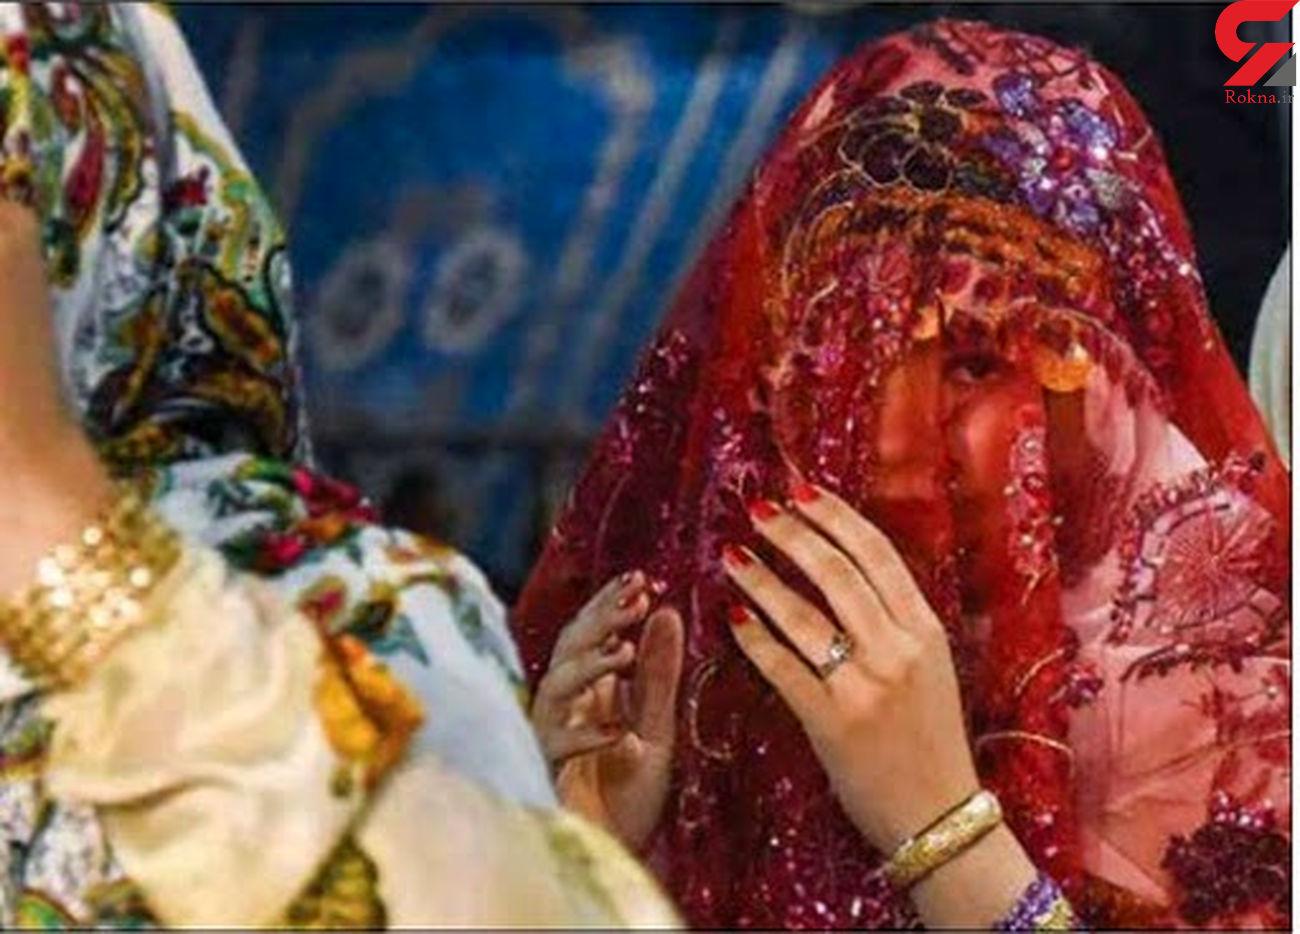 ازدواج دختر بچه ها با مردان نامرئی در خراسان / تصویر تلخ فقر